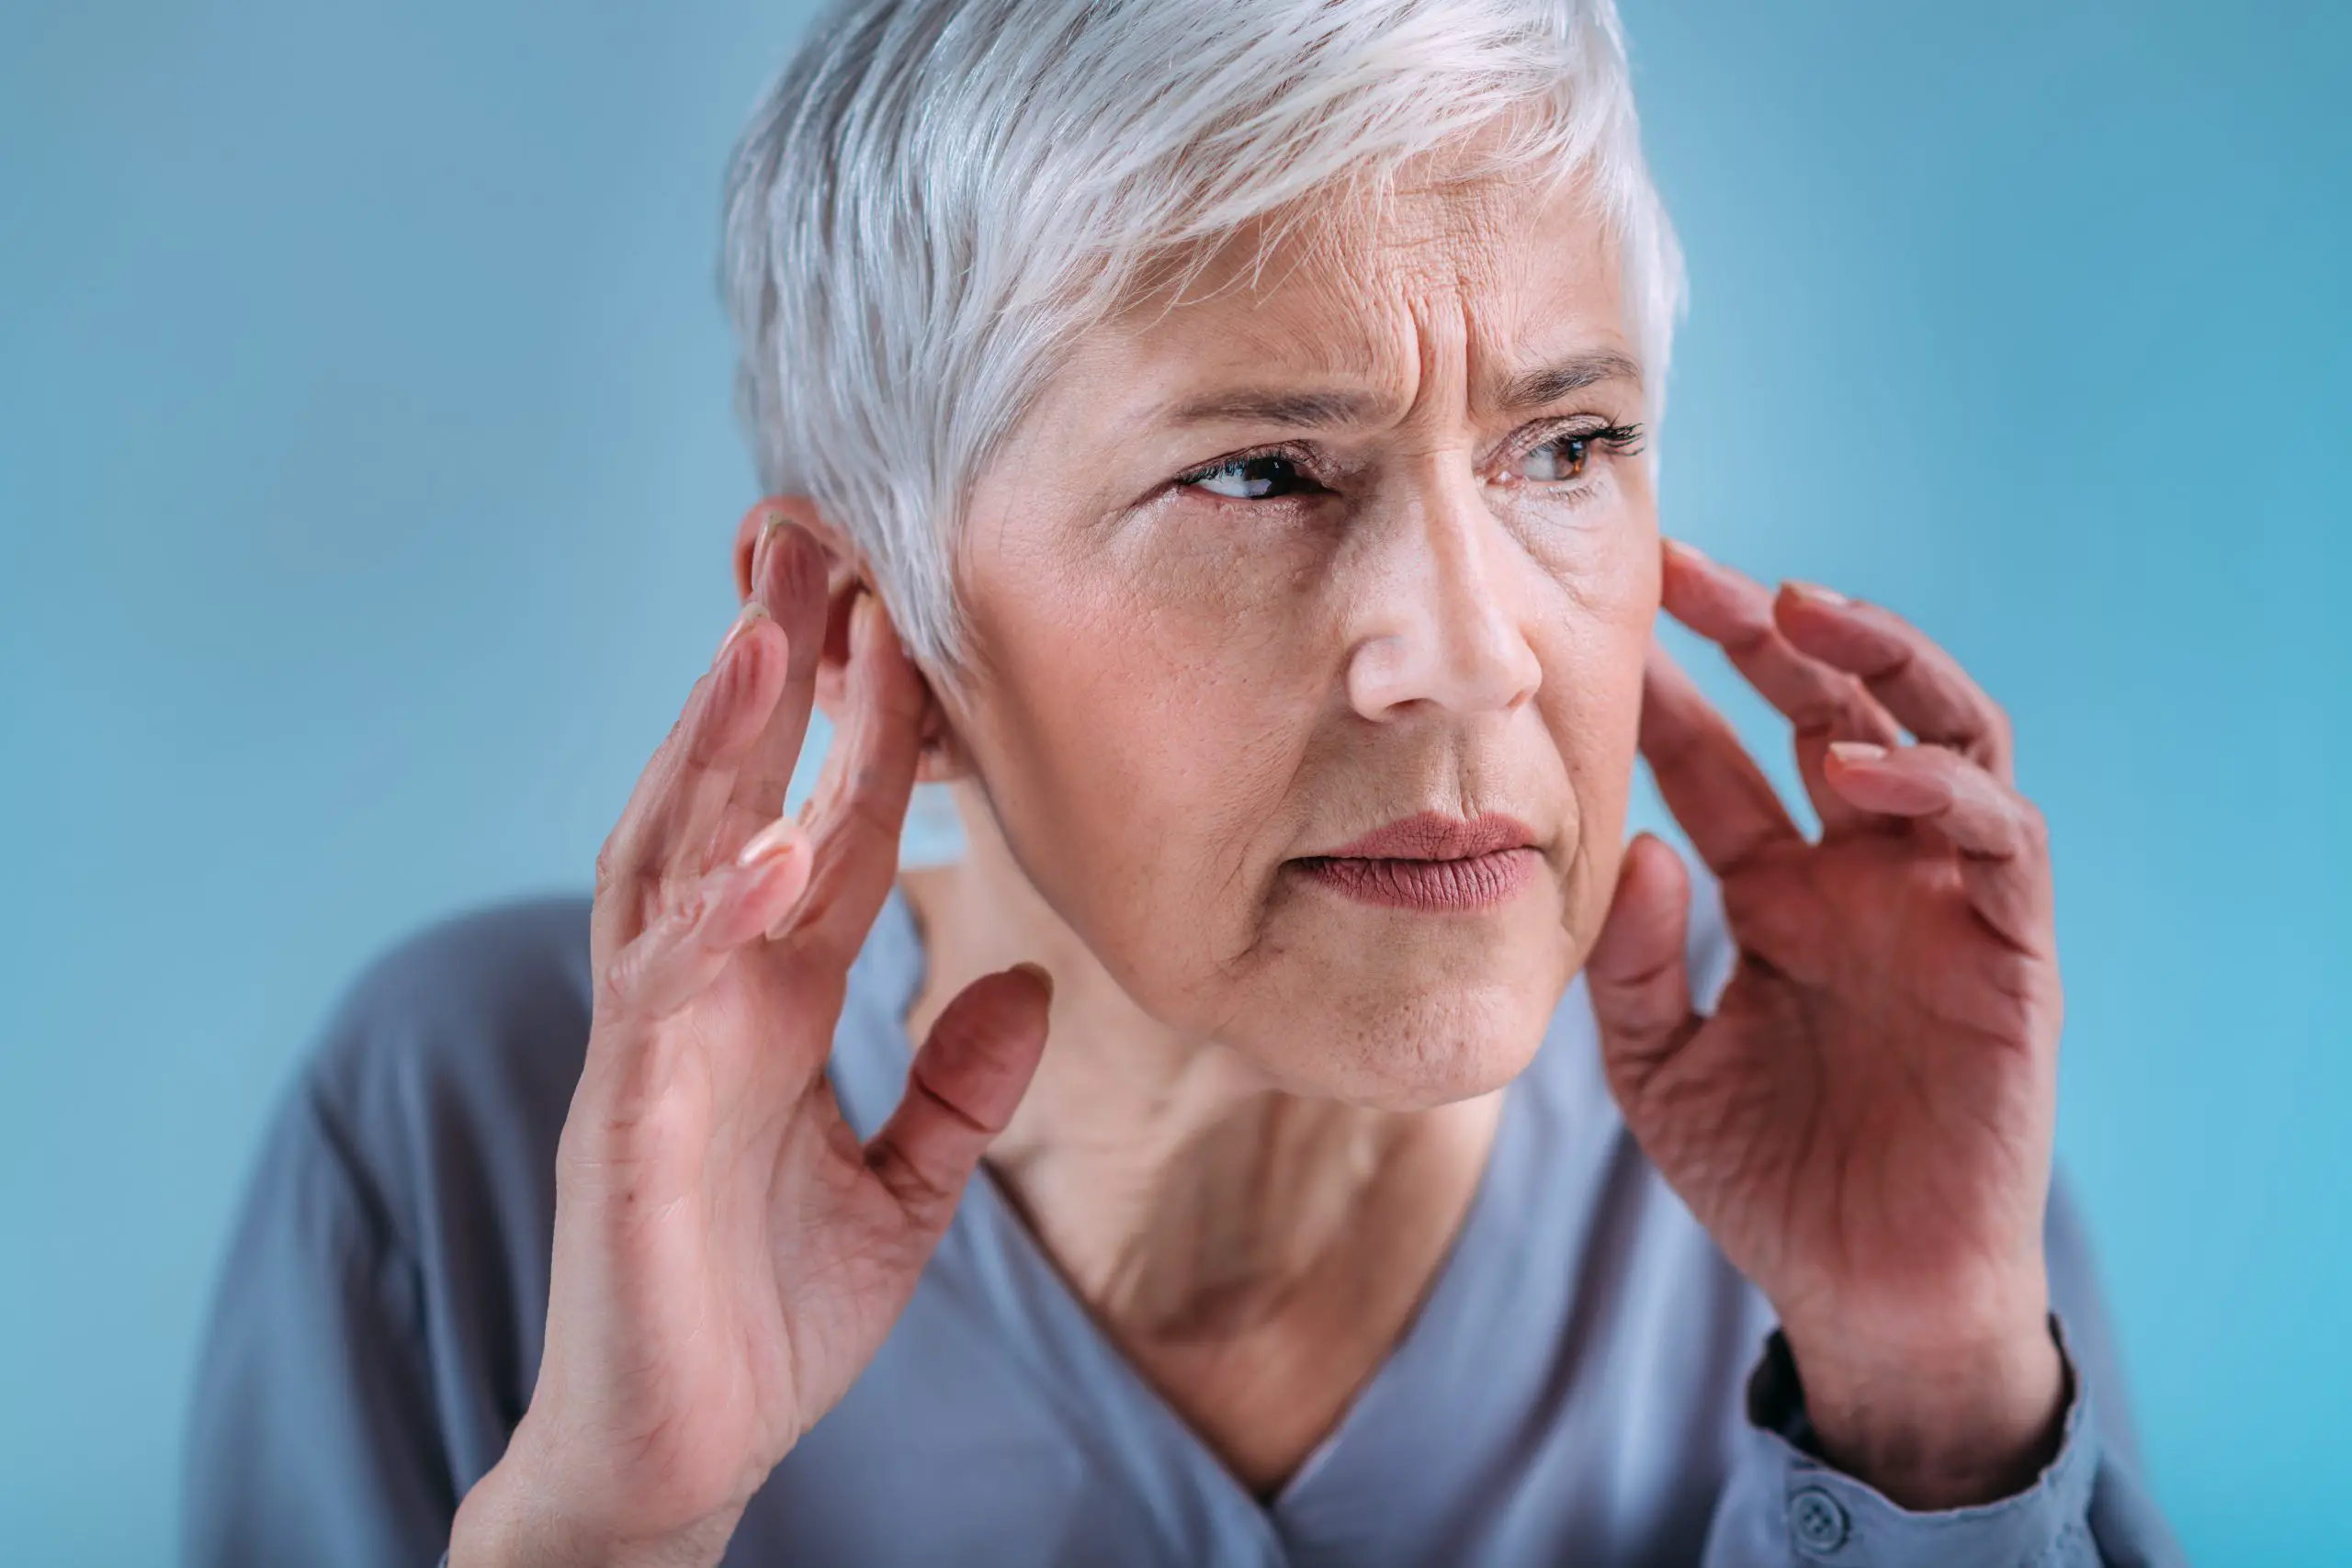 Hearing Loss News - Mixed Hearing Loss